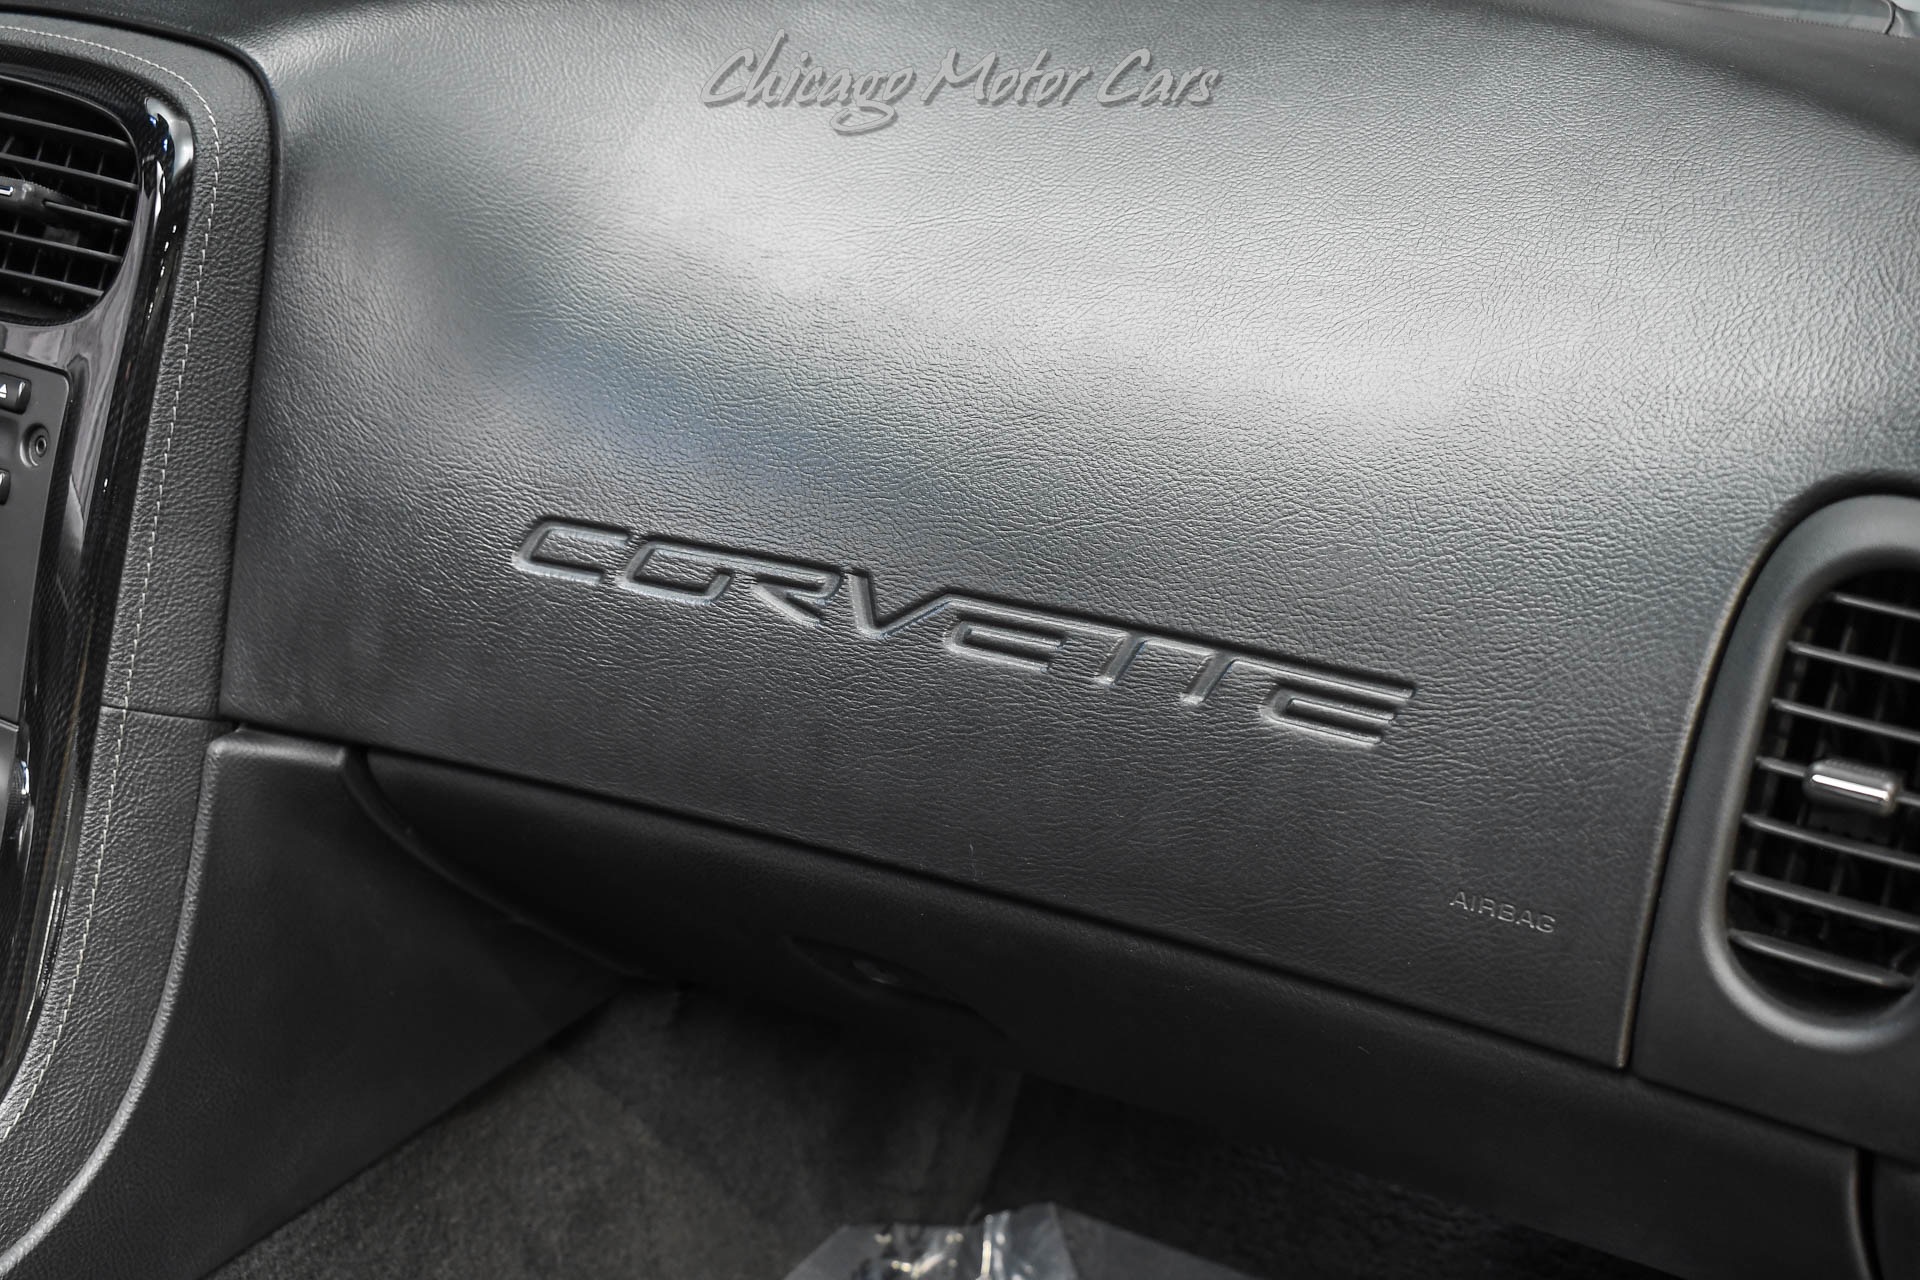 Used-2008-Chevrolet-Corvette-ZR6X-WIDEBODY-TWIN-TURBO-700HP-ZR1-BRAKES-OVER-50k-IN-MODS